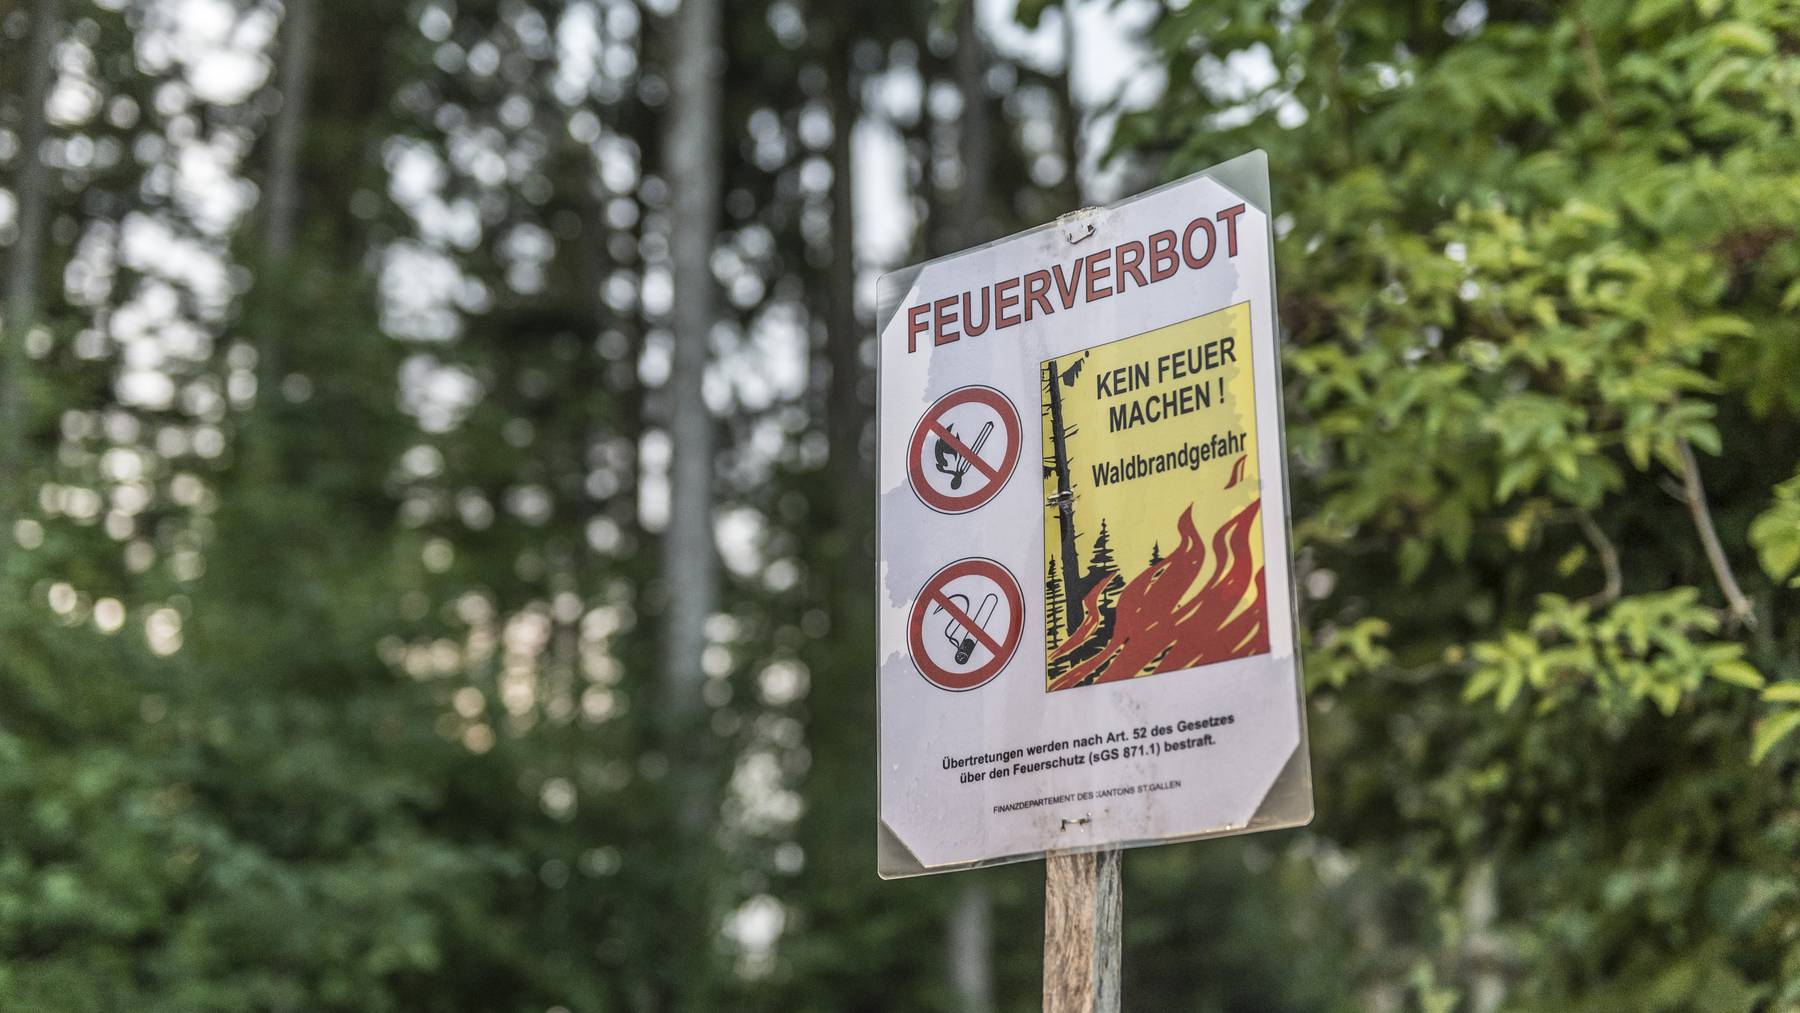 Ab dem 7. Mai darf im Wald und in Waldesnähe wieder Feuer gemacht werden - sofern es keine kommunalen Verbote gibt.